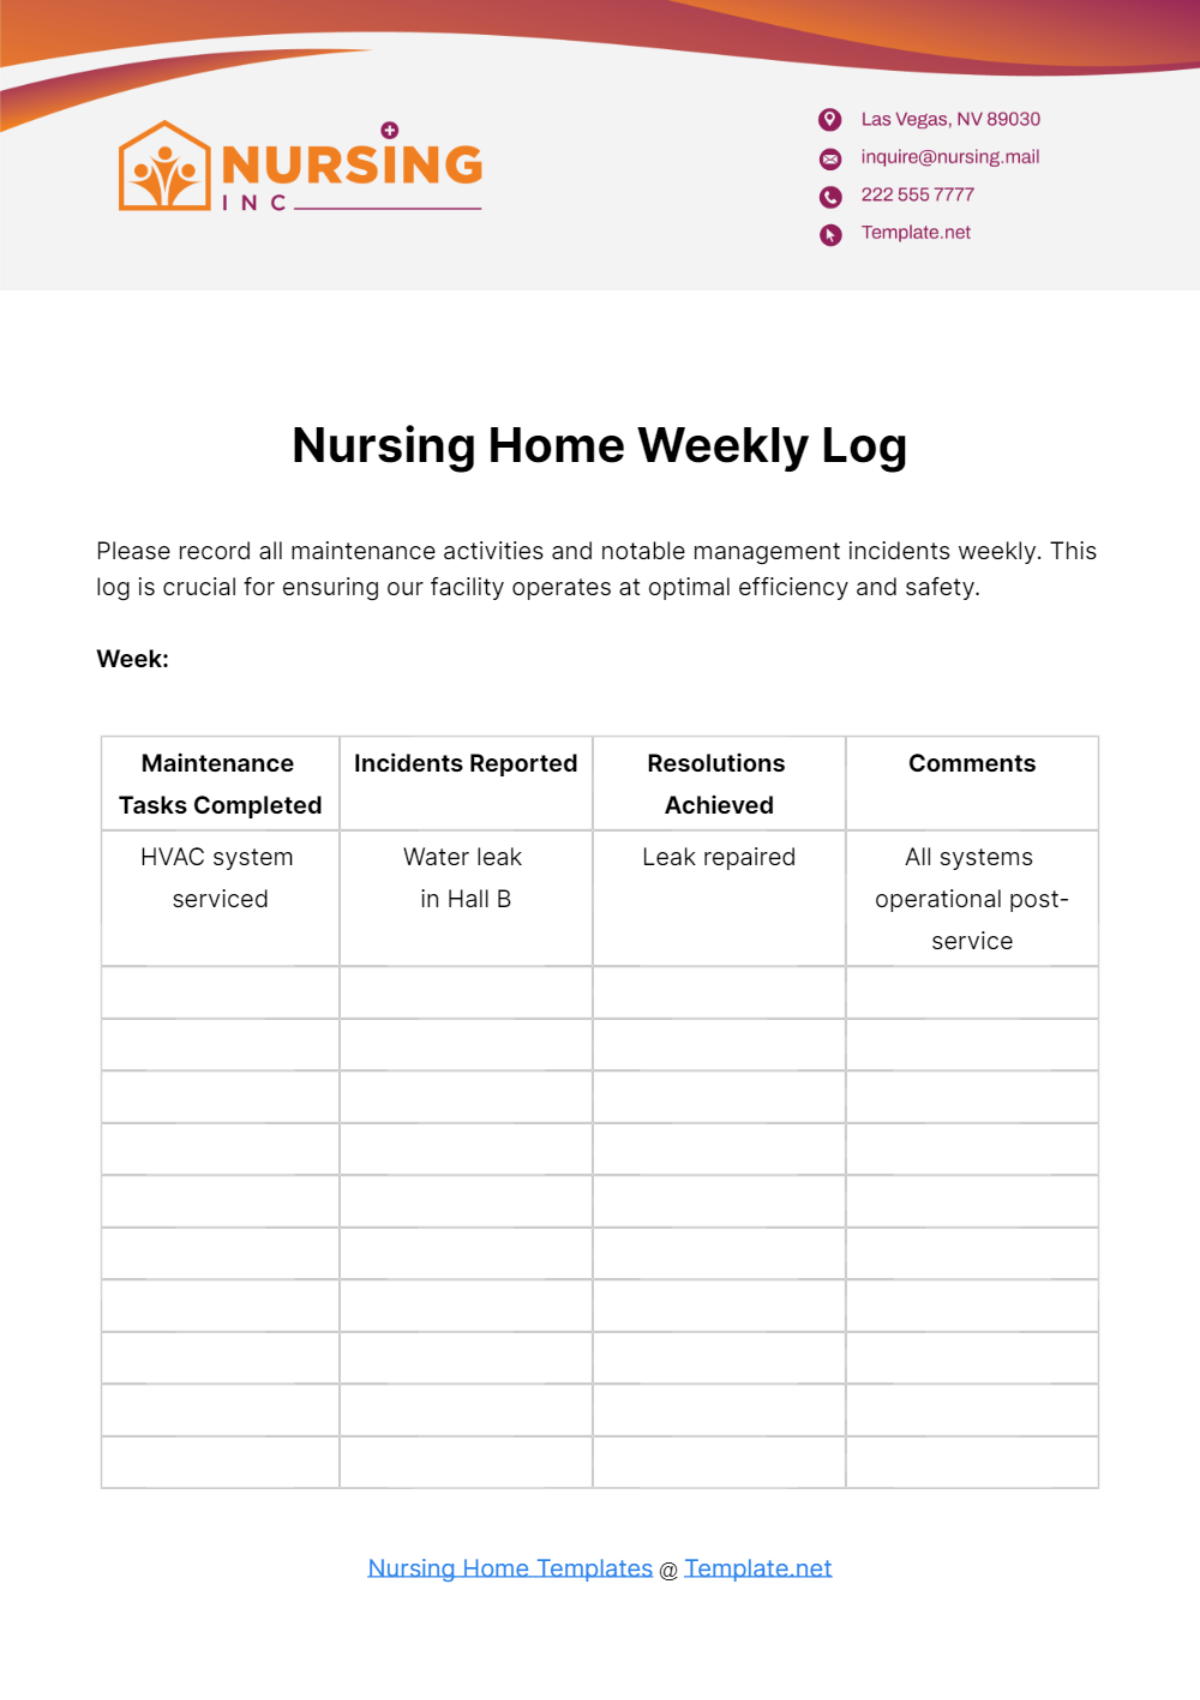 Free Nursing Home Weekly Log Template